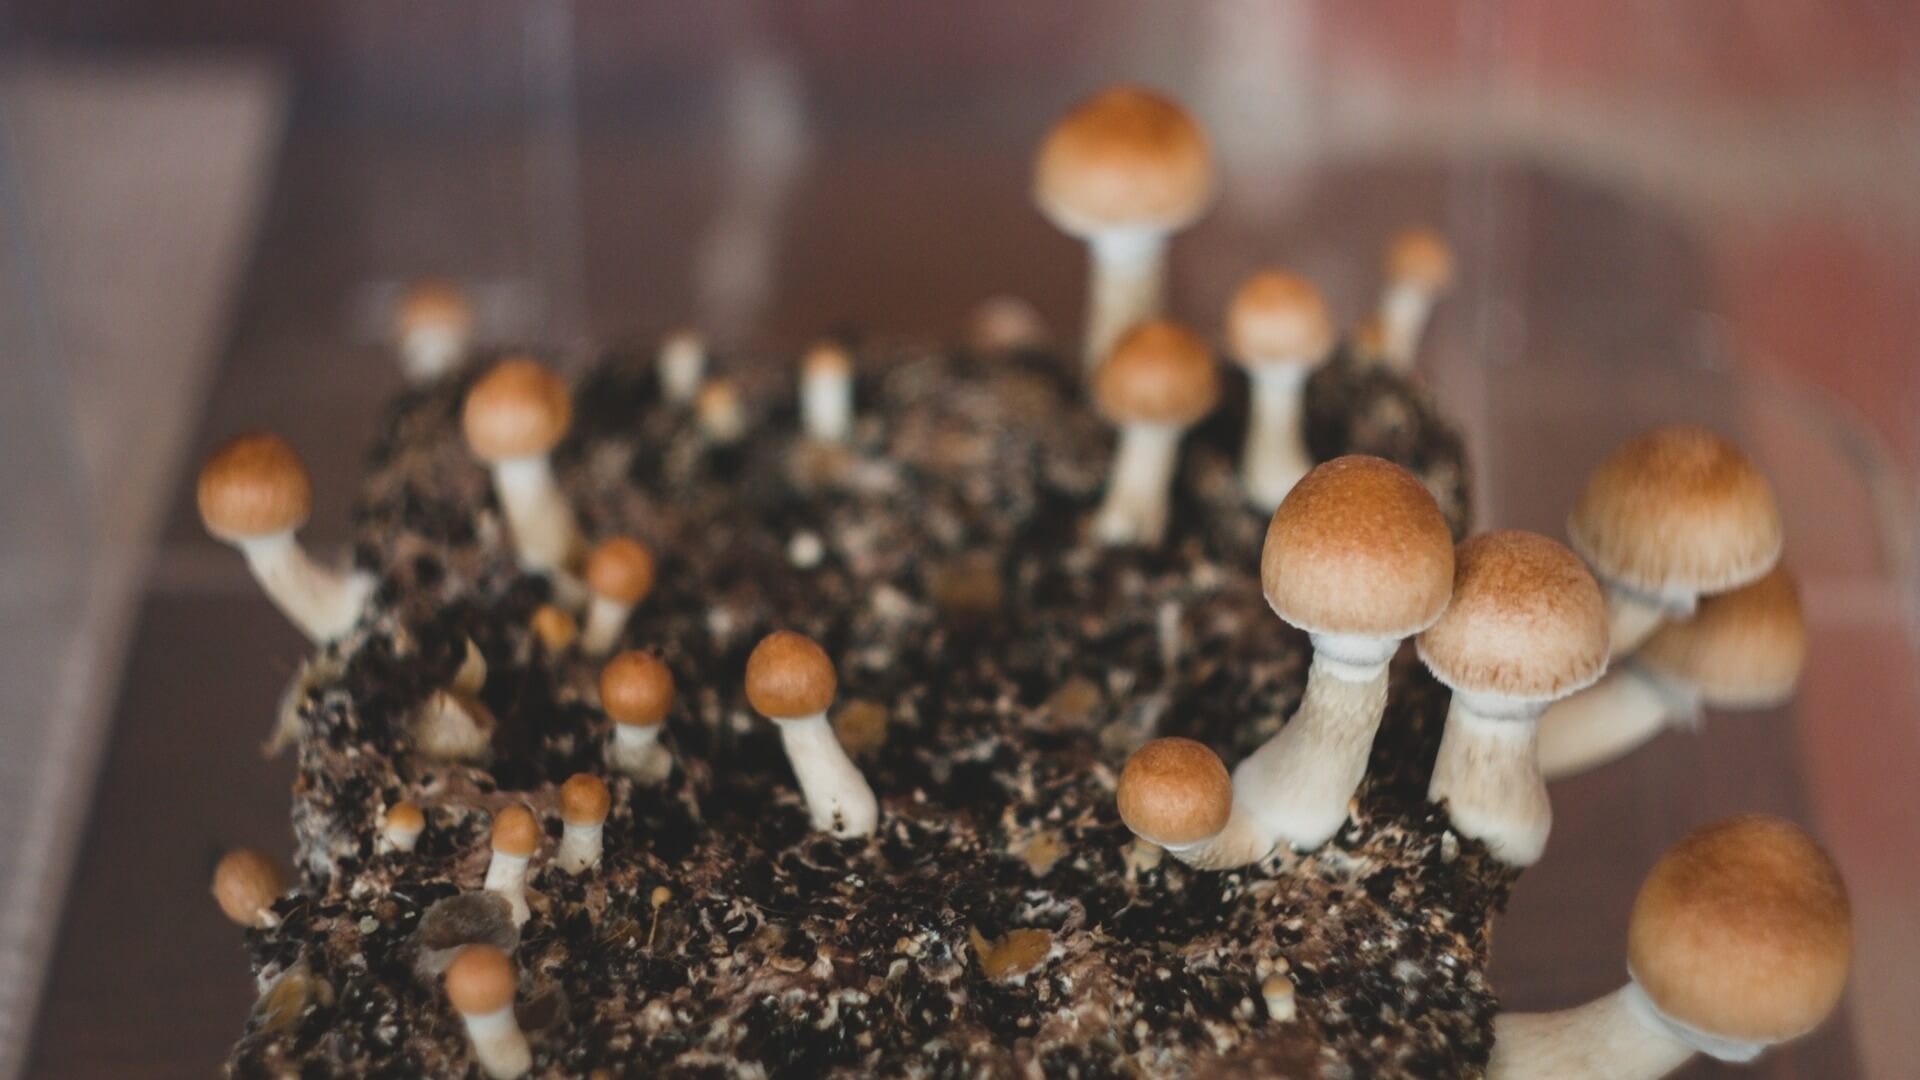 magic mushrooms in a pile of dirt